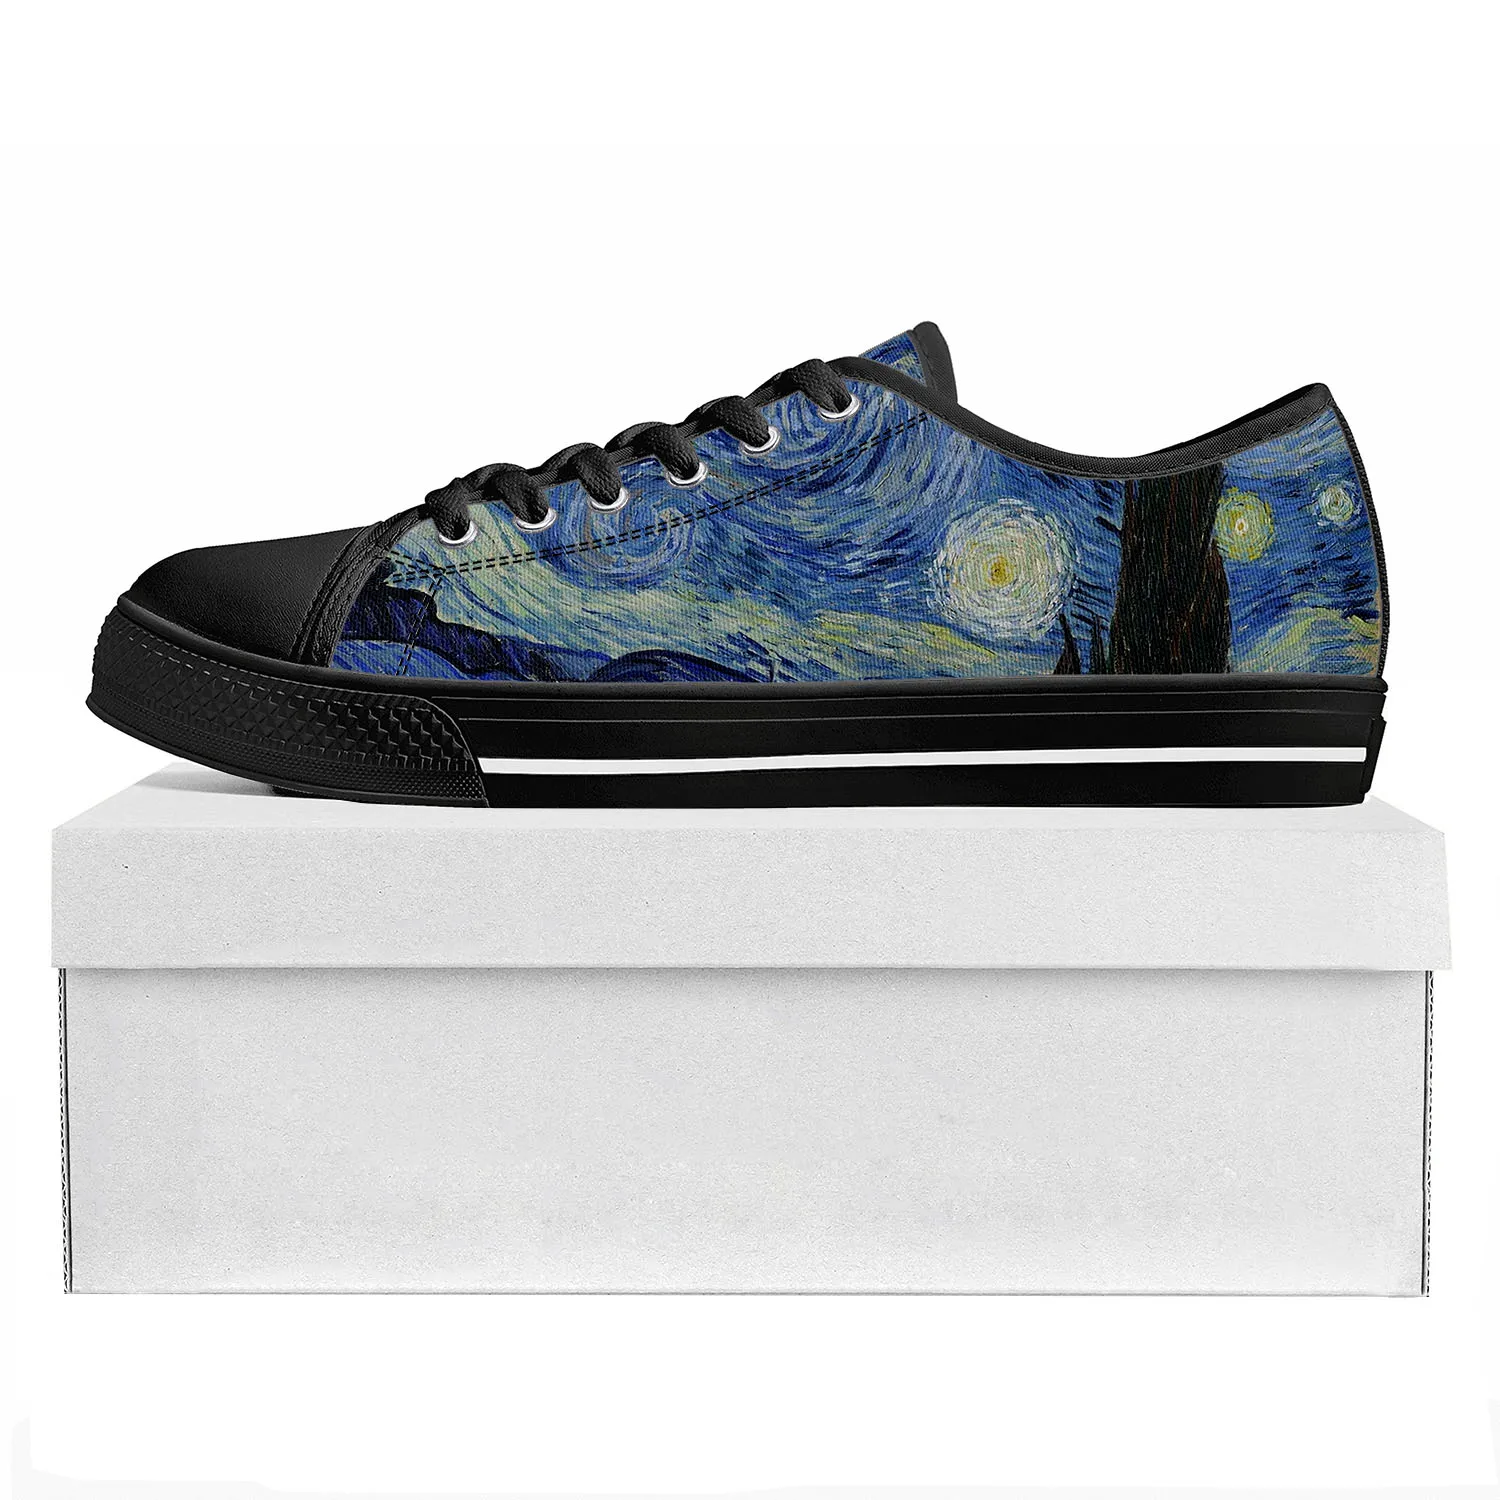 

Ван Гог масляная краска Звездная ночь Низкий Топ Высокое качество спортивная обувь для мужчин женщин подростков холщовая обувь пара обувь на заказ